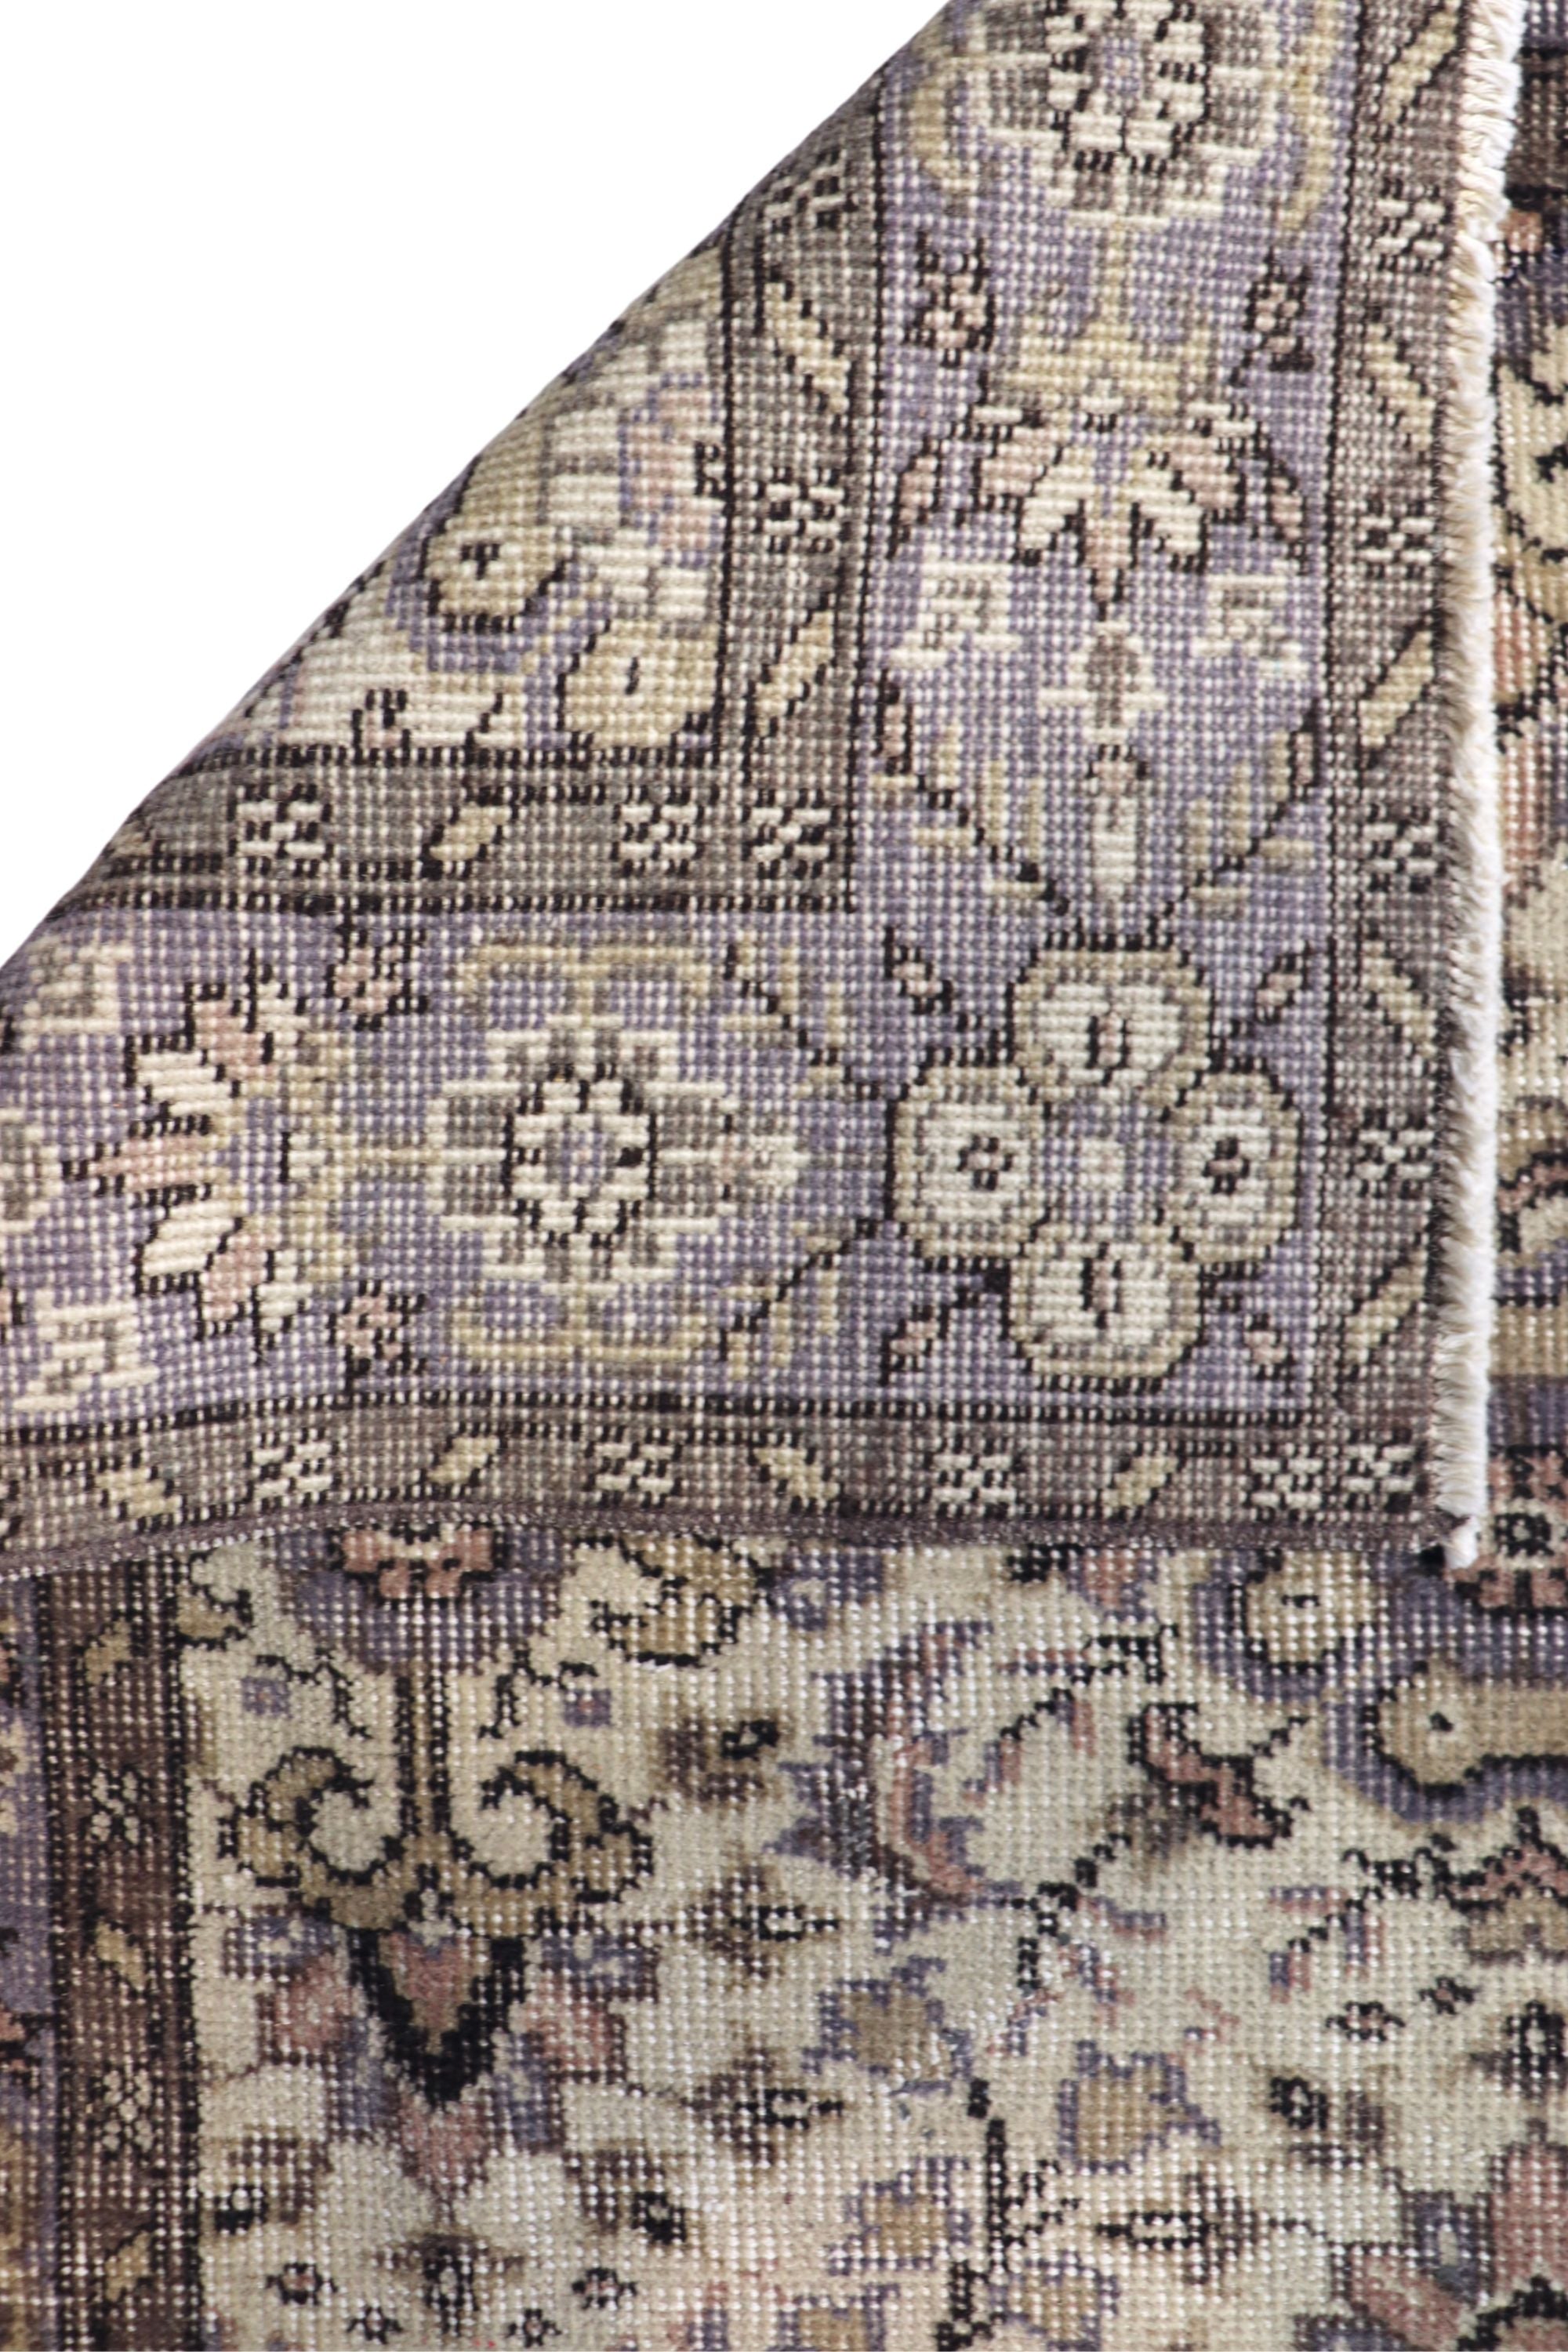 Vintage Lavender rug